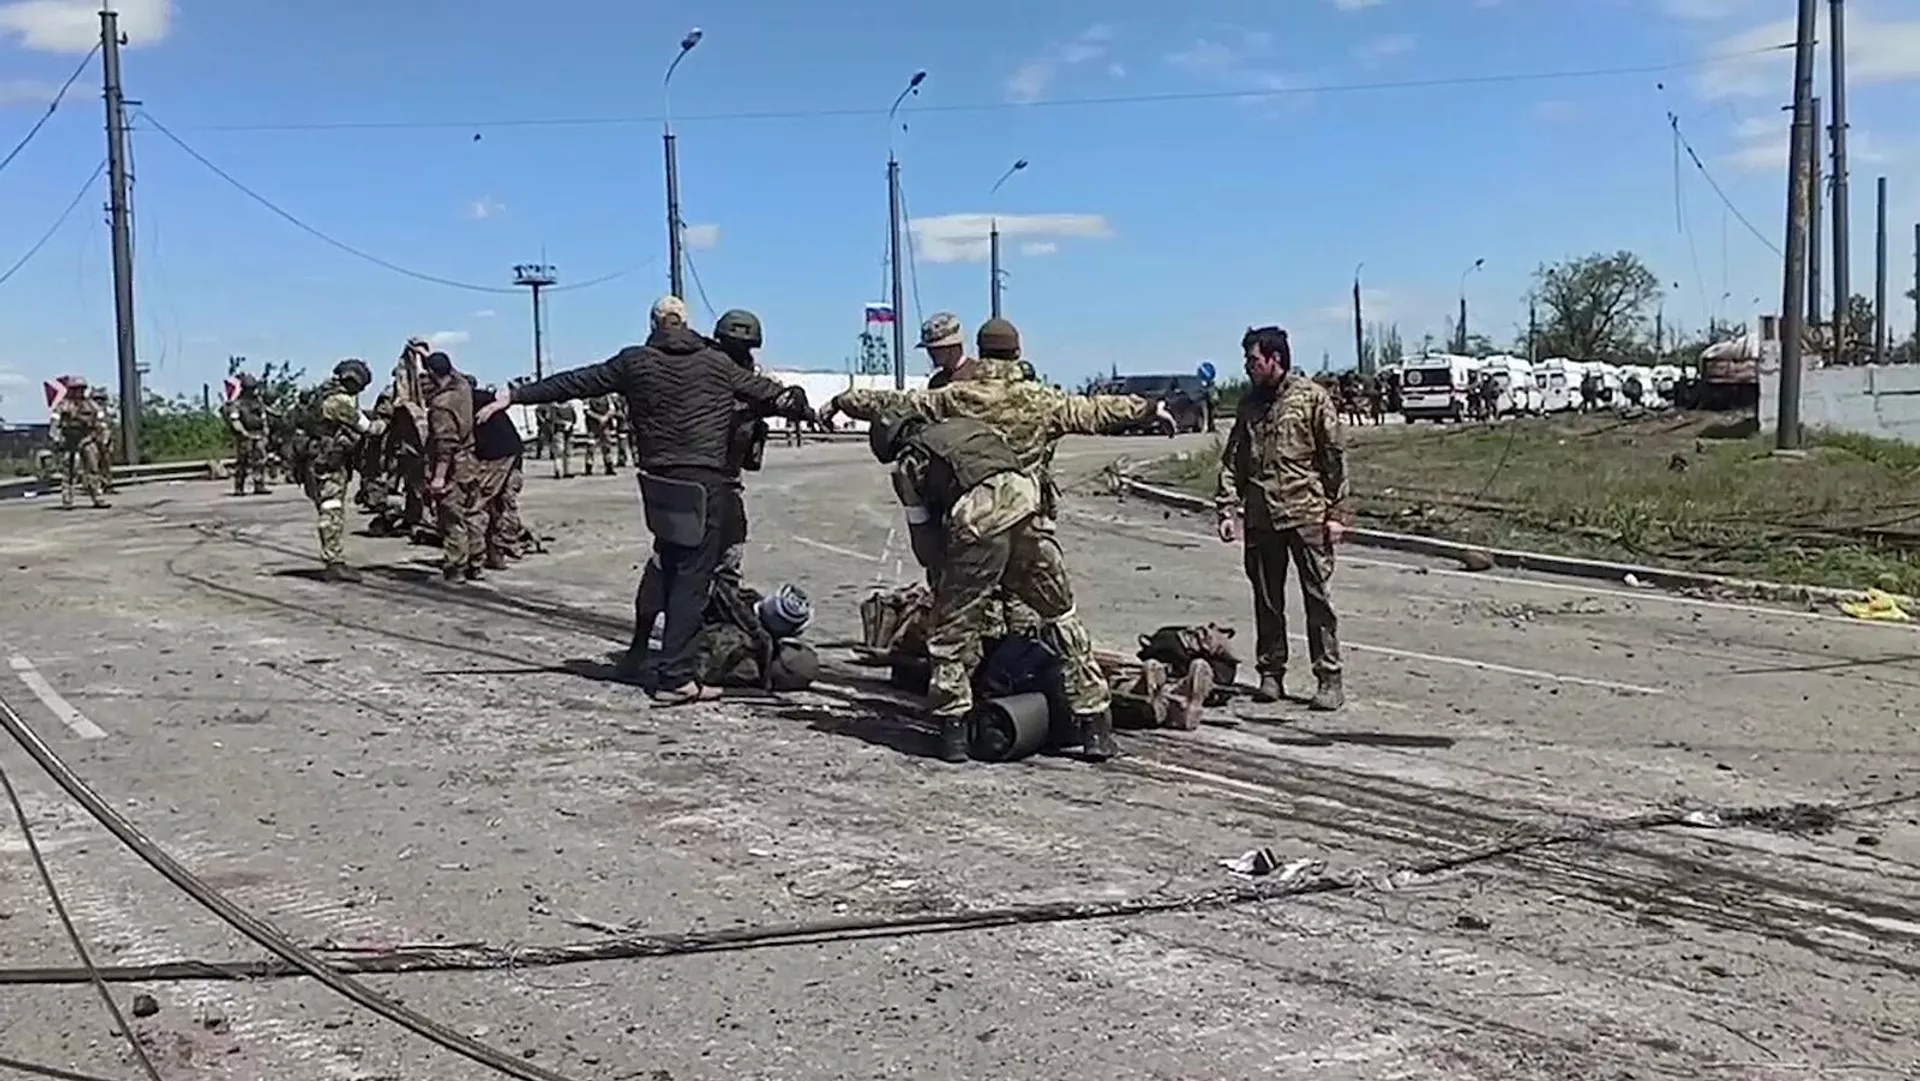 Մեկ շաբաթում ավելի քան 35 ուկրաինացի զինծառայող է գերի հանձնվել. ՌԴ ՊՆ